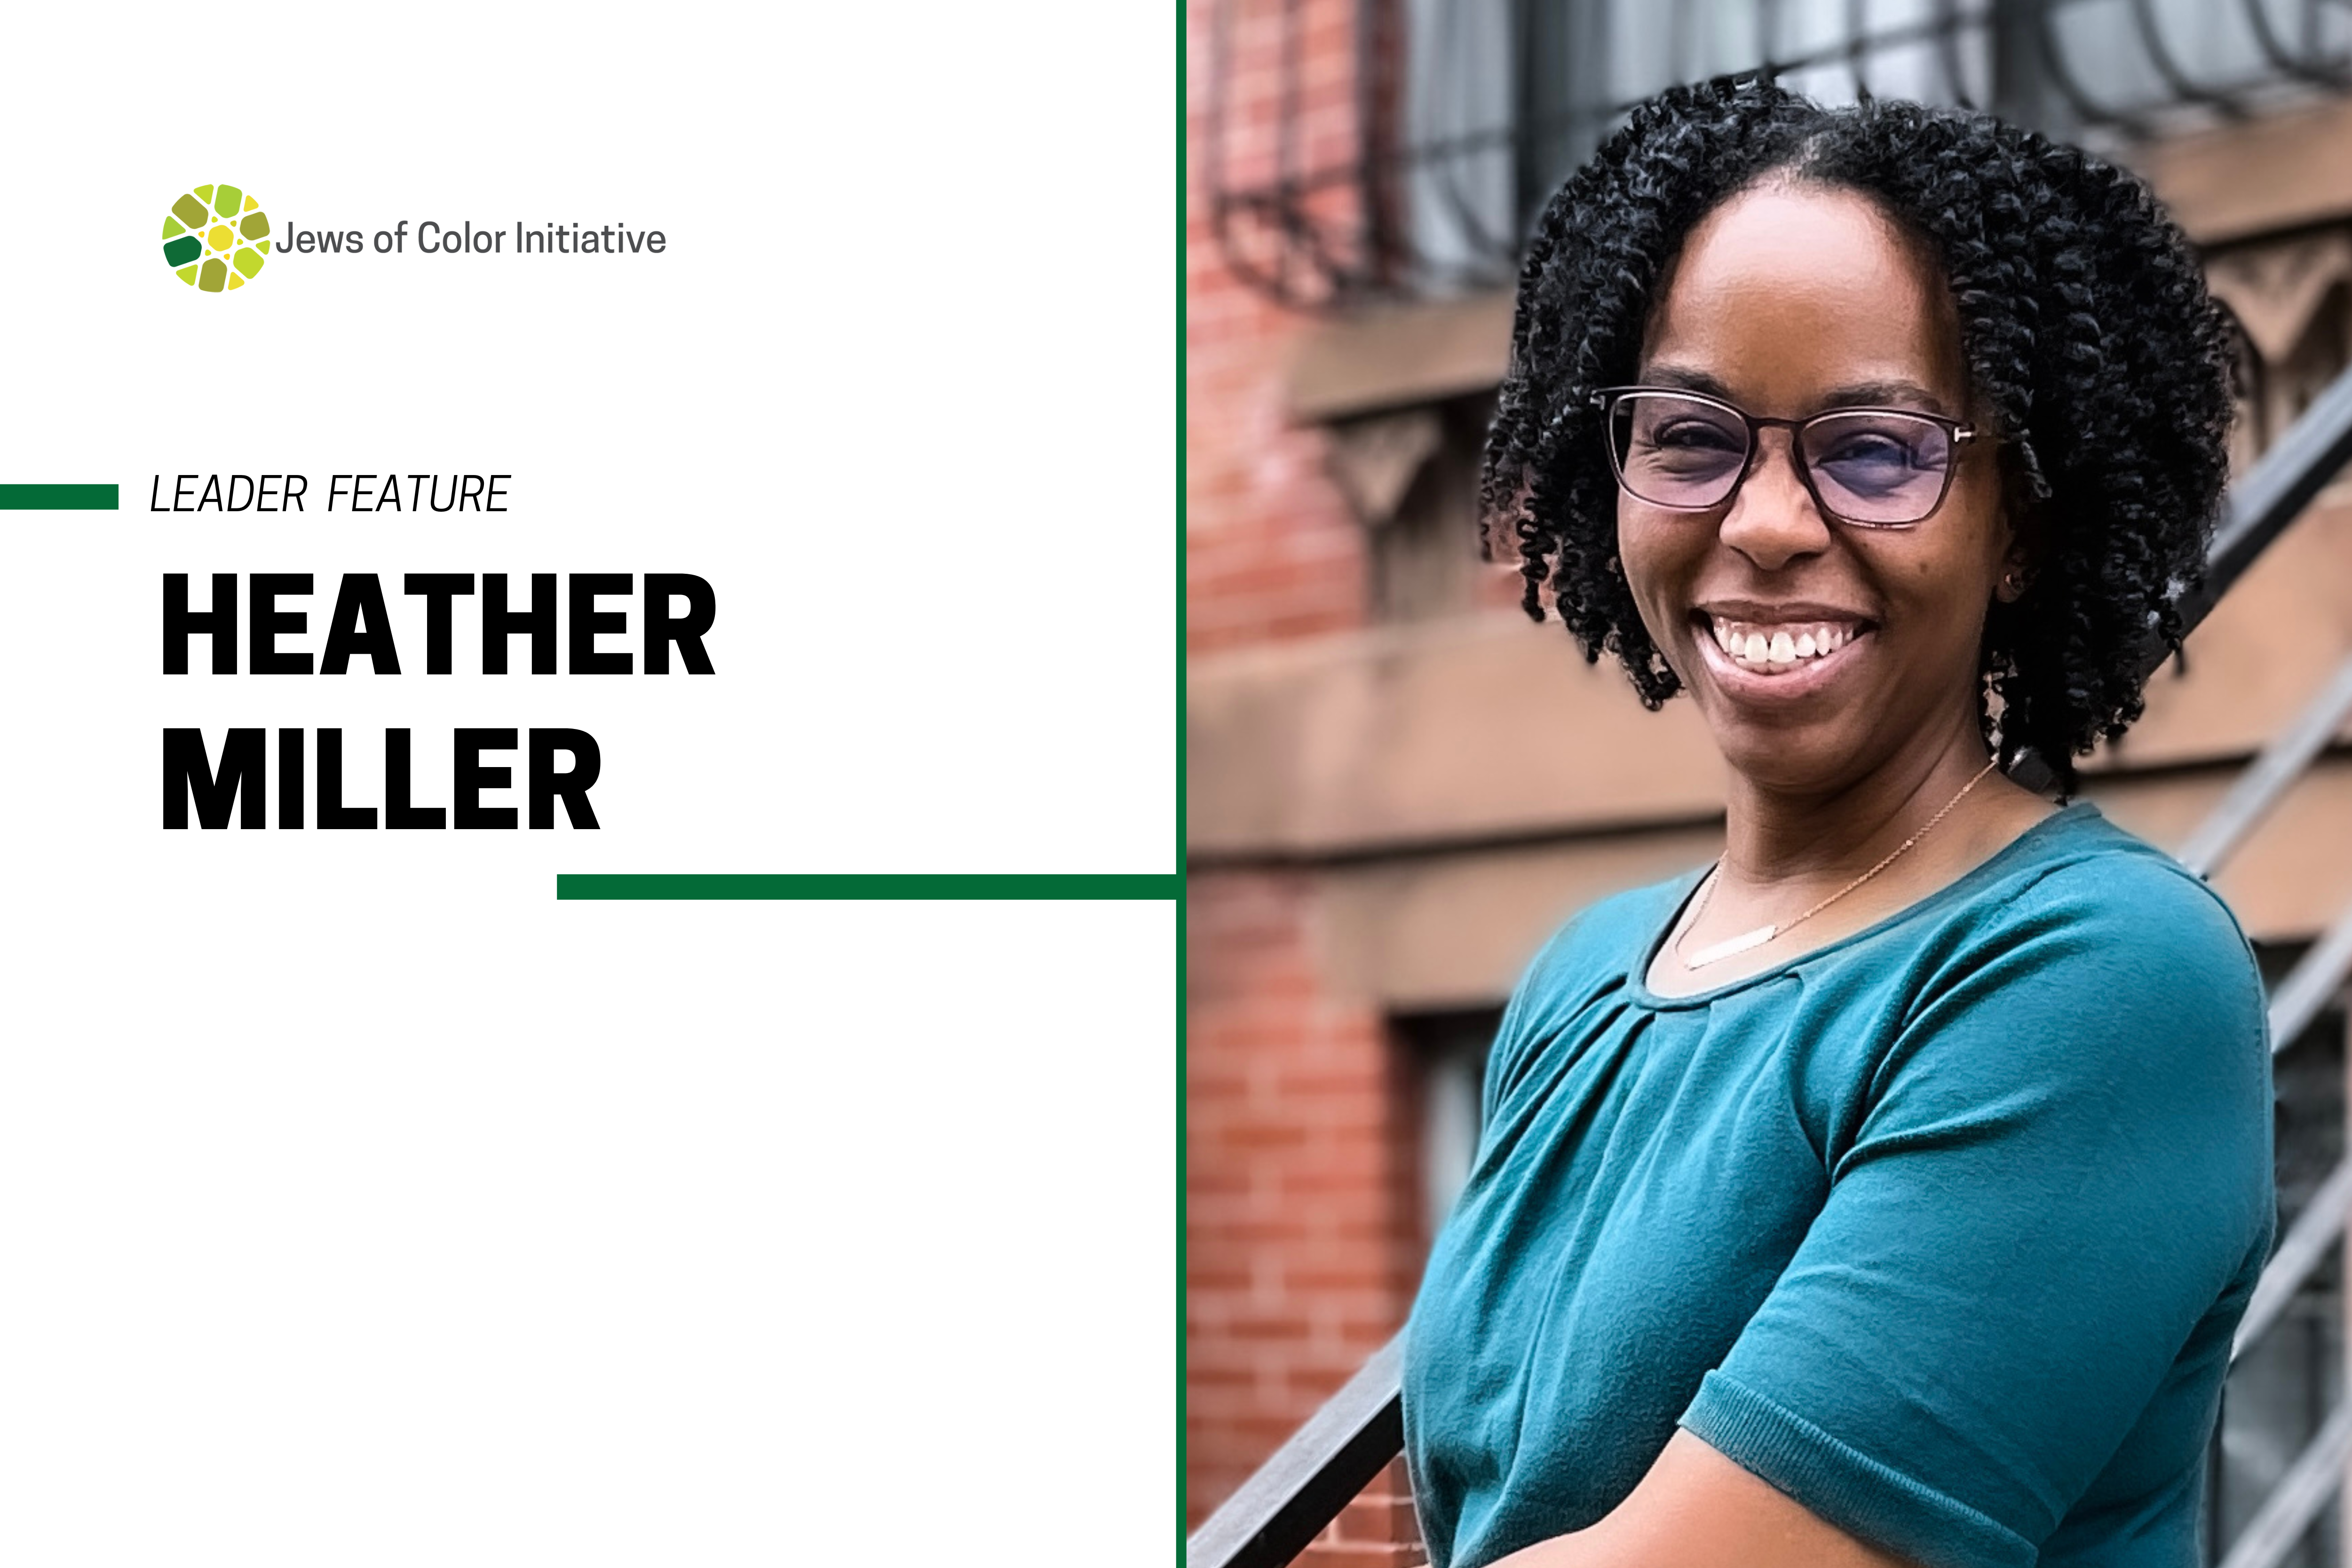 JoCI Leader Feature: Heather Miller